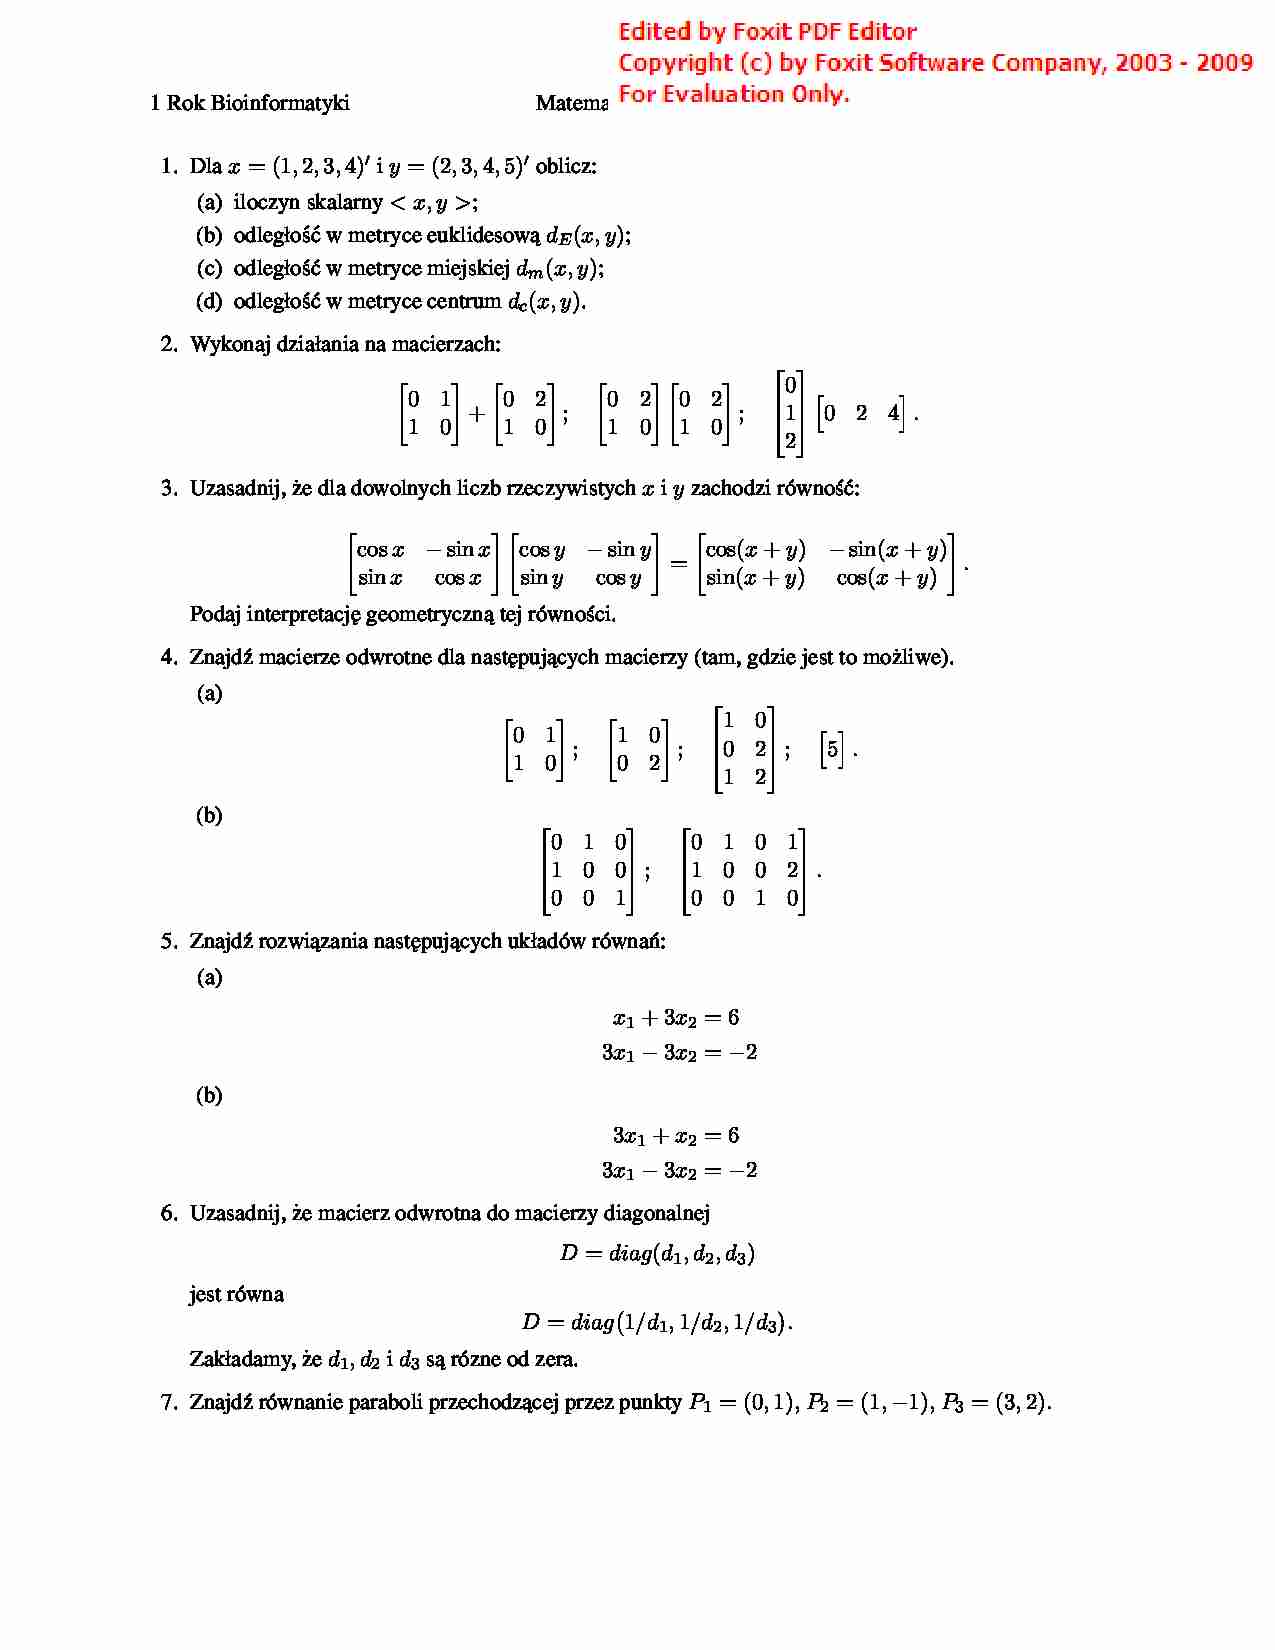 Listy zadań z matematyki dla Bioinformatyki - strona 1